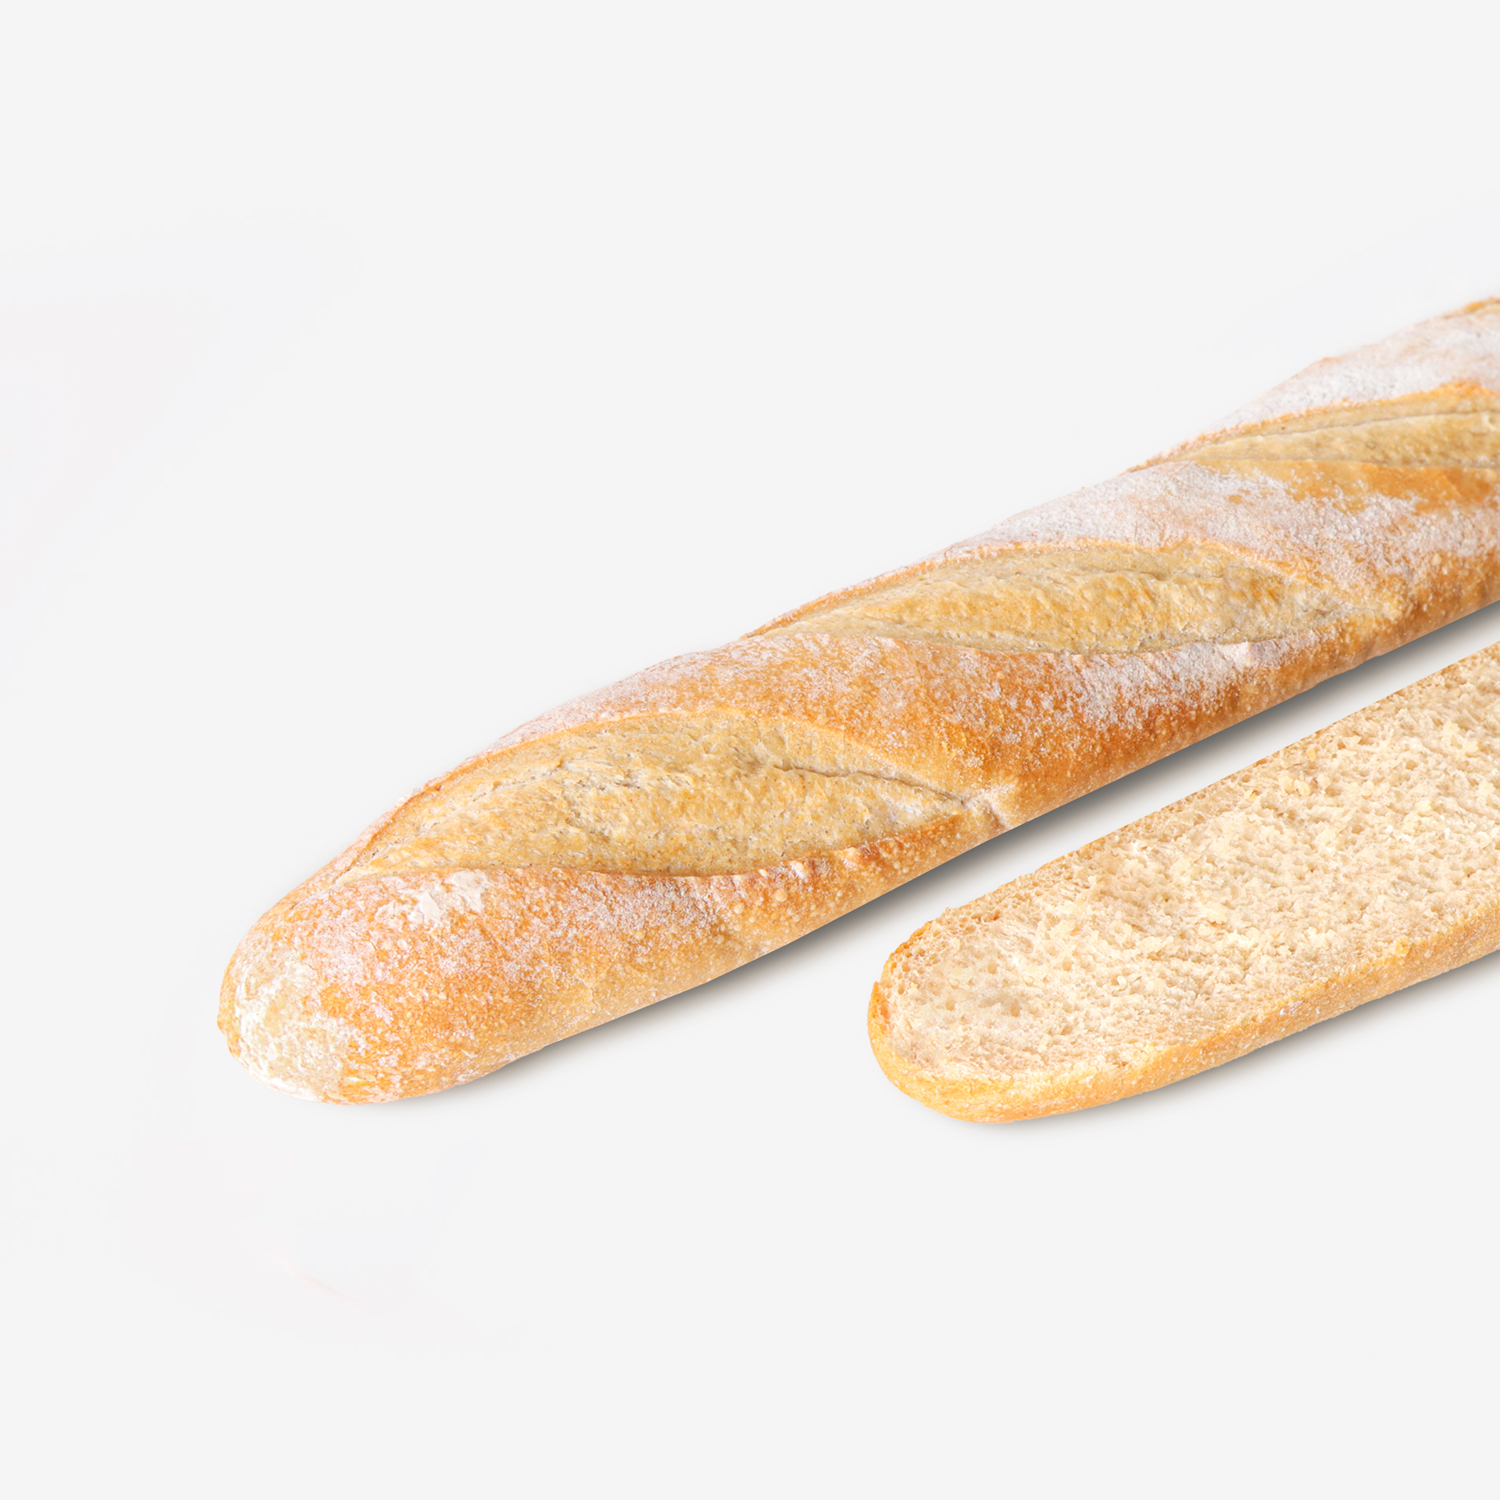 ขนมปังแช่แข็ง : SYNOVA บาเก็ตต์ซาวโด (ยกกล่อง)